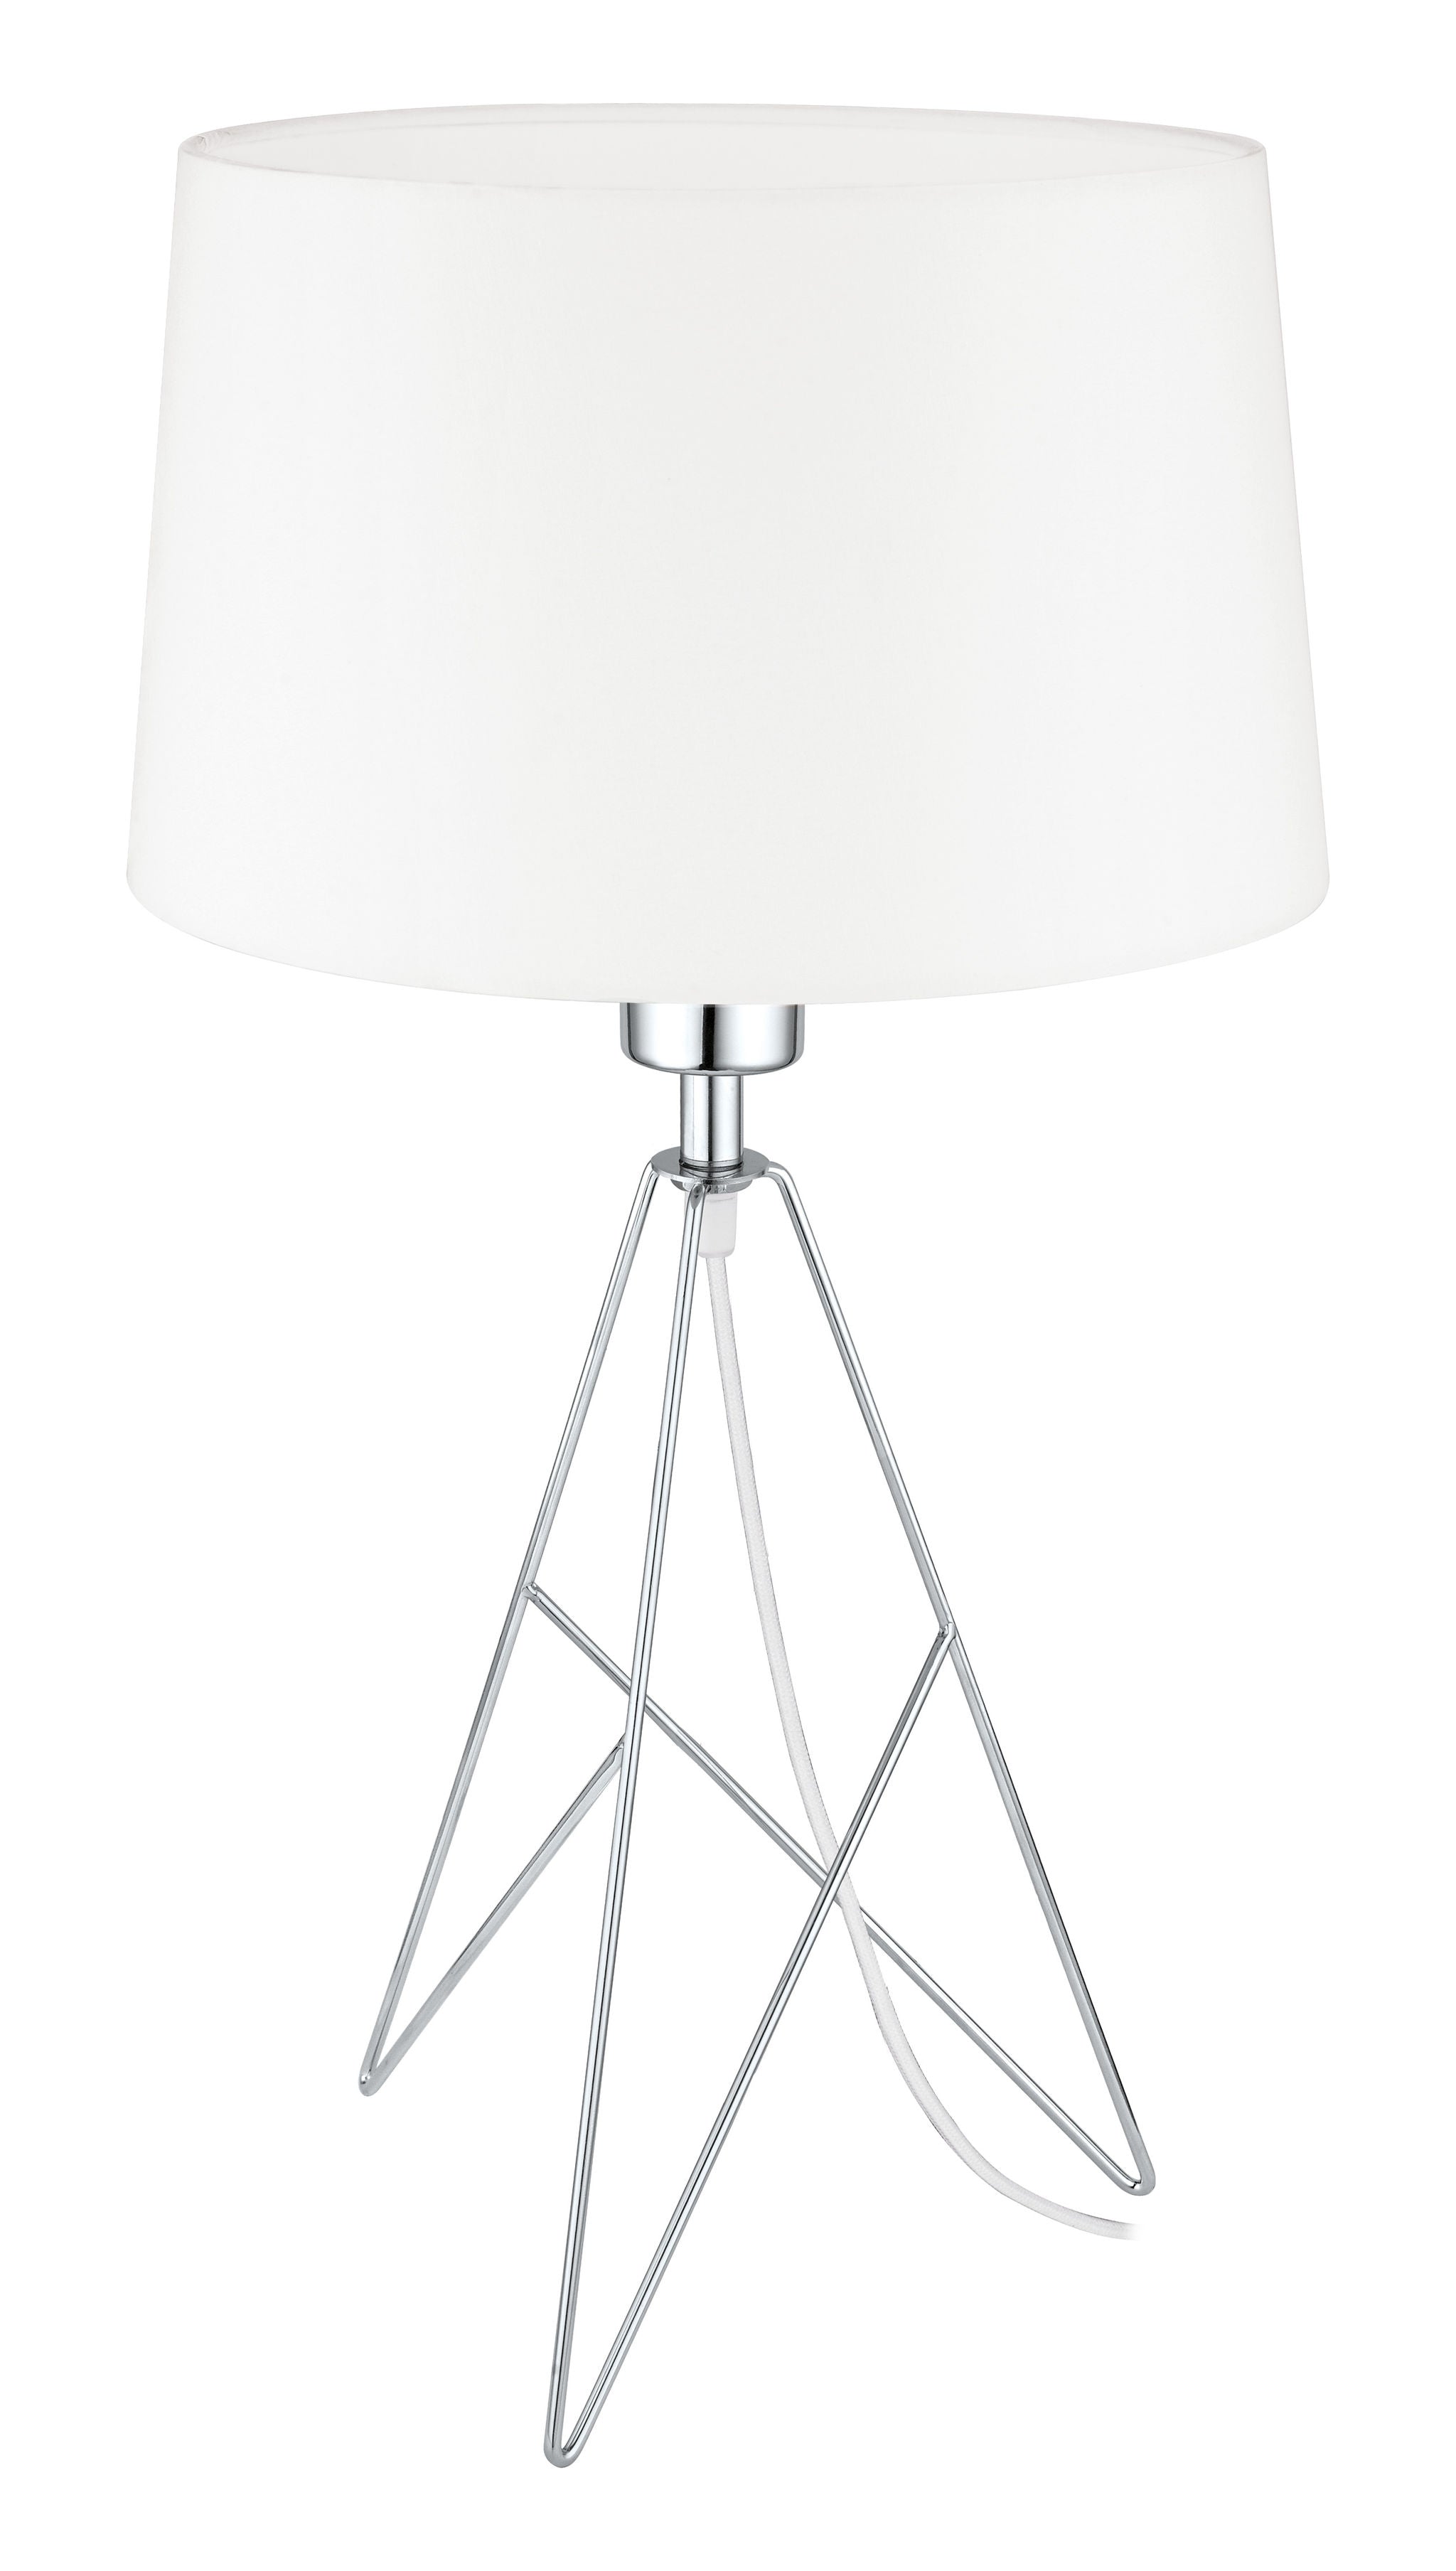 Camporale Lampe sur table Chrome - 39181A | EGLO